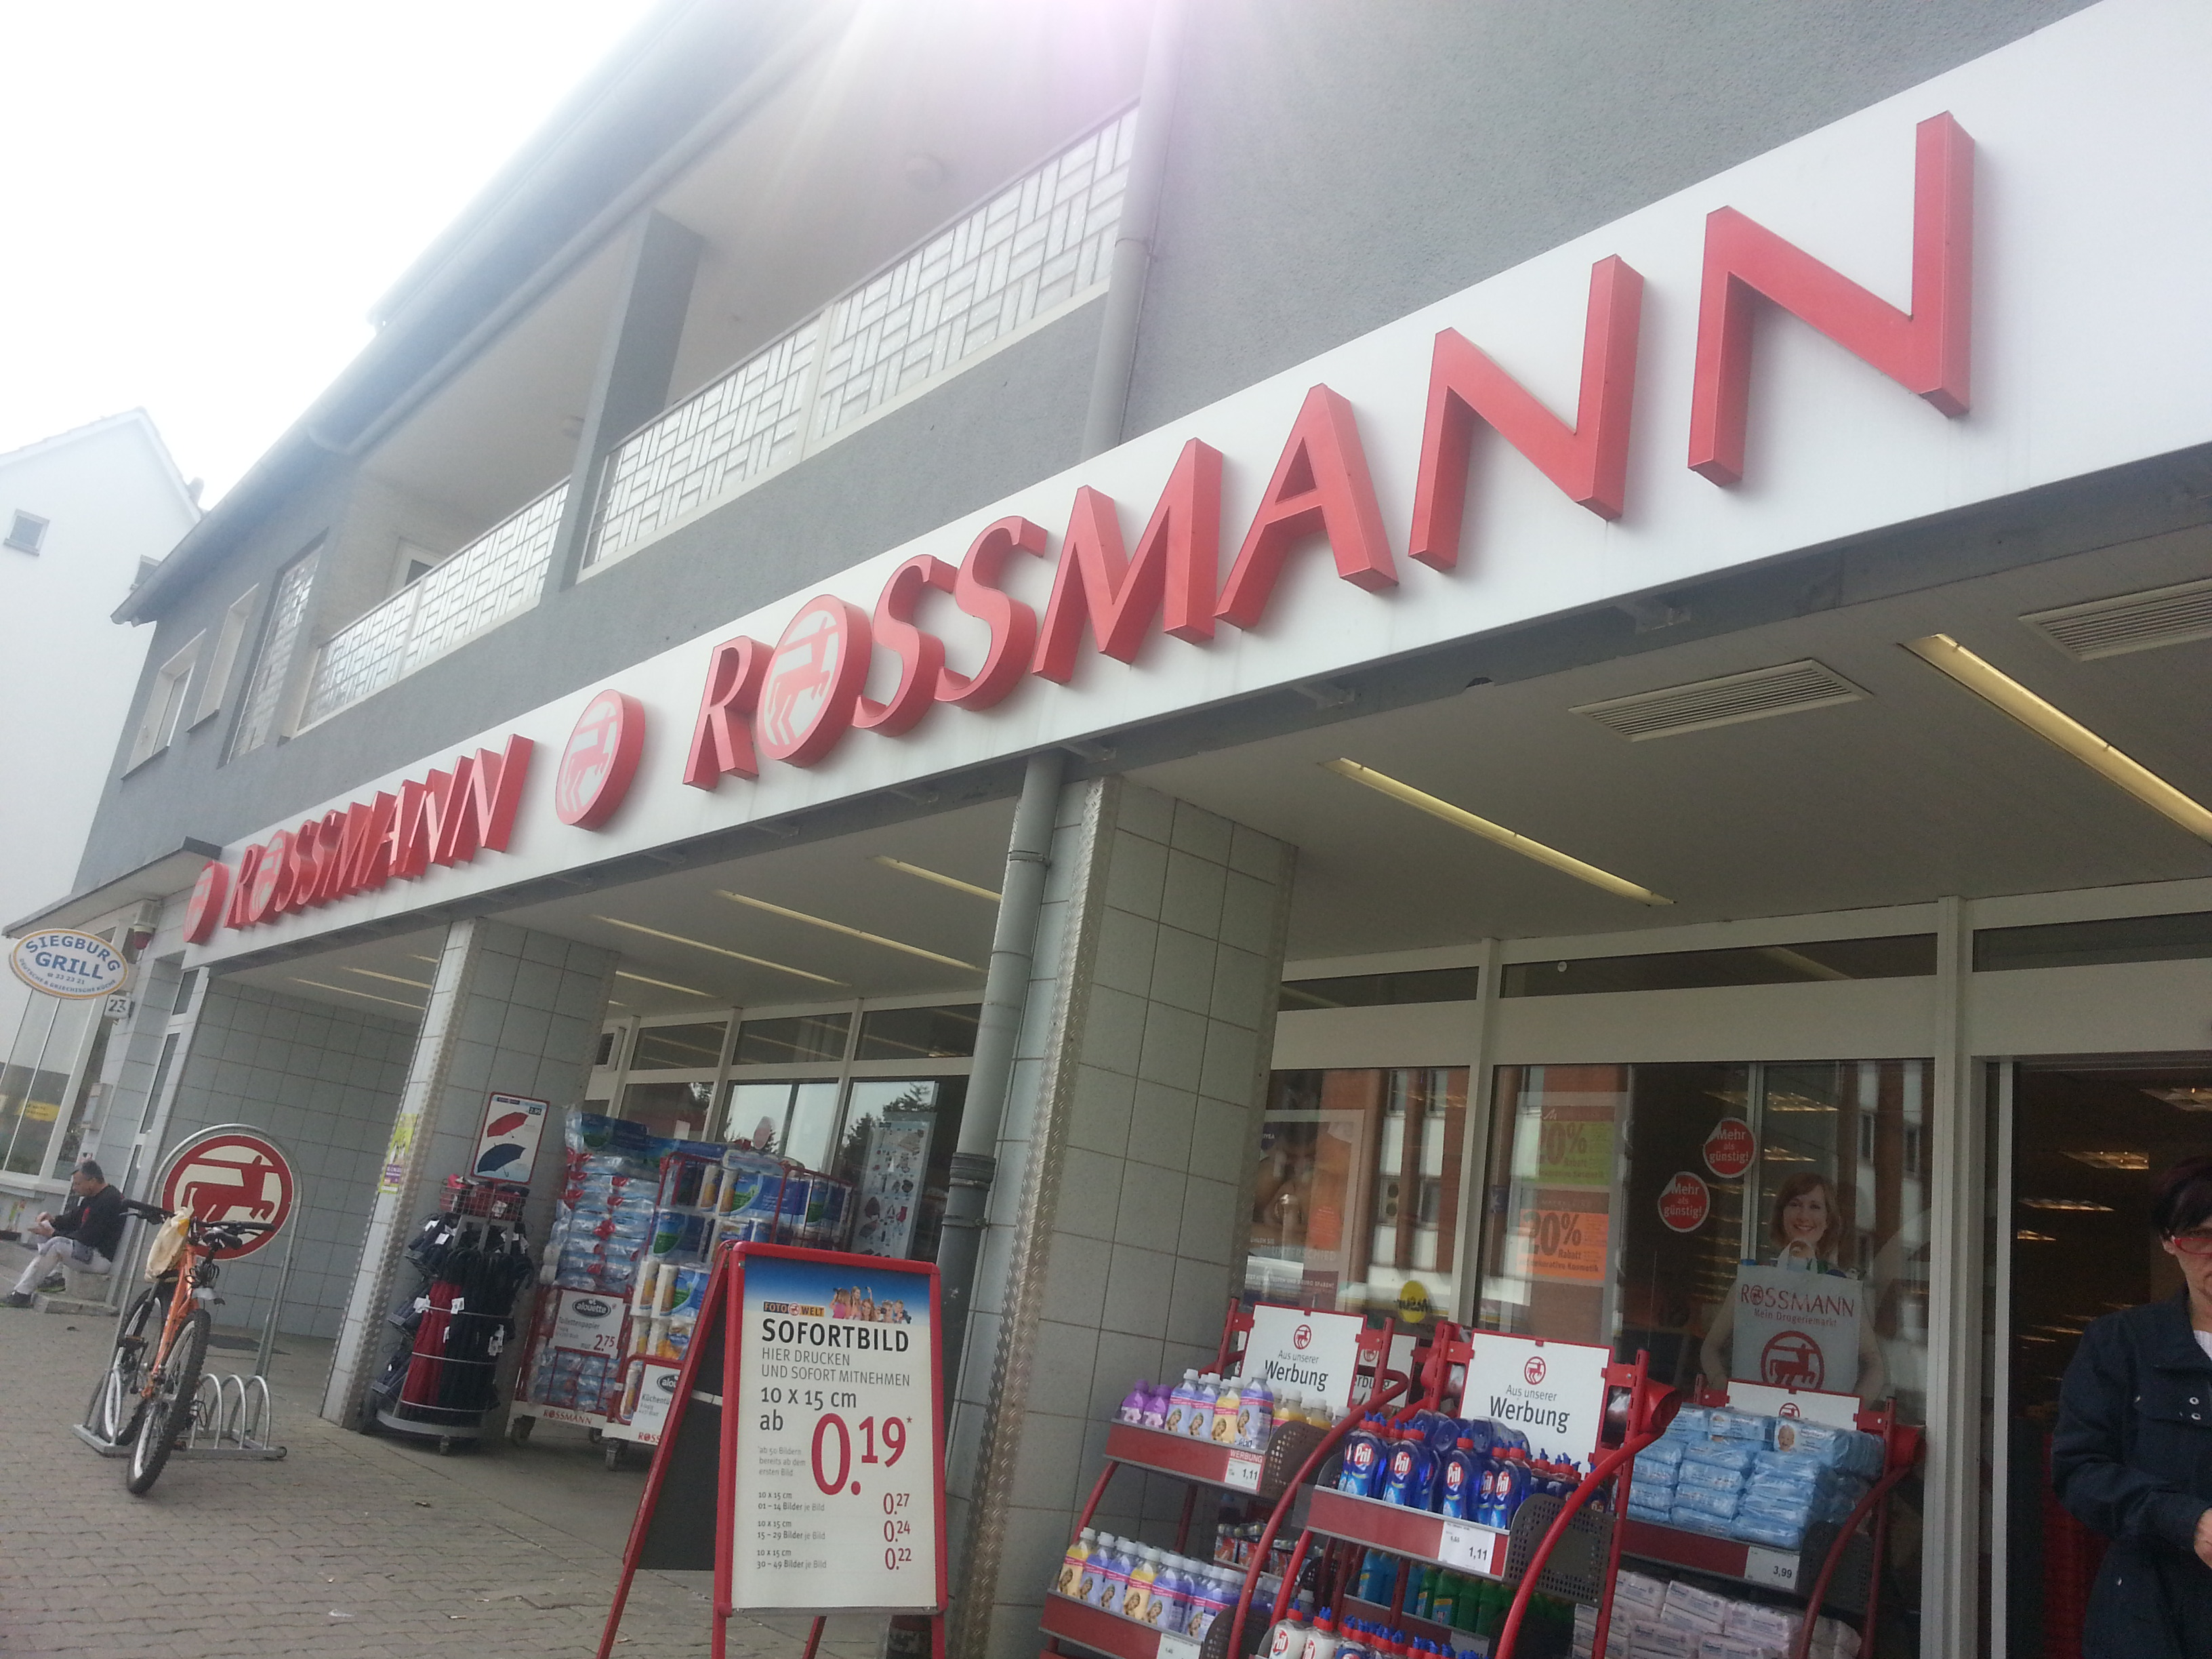 Rossmann Drogeriemarkte 44359 Dortmund Mengede Offnungszeiten Adresse Telefon